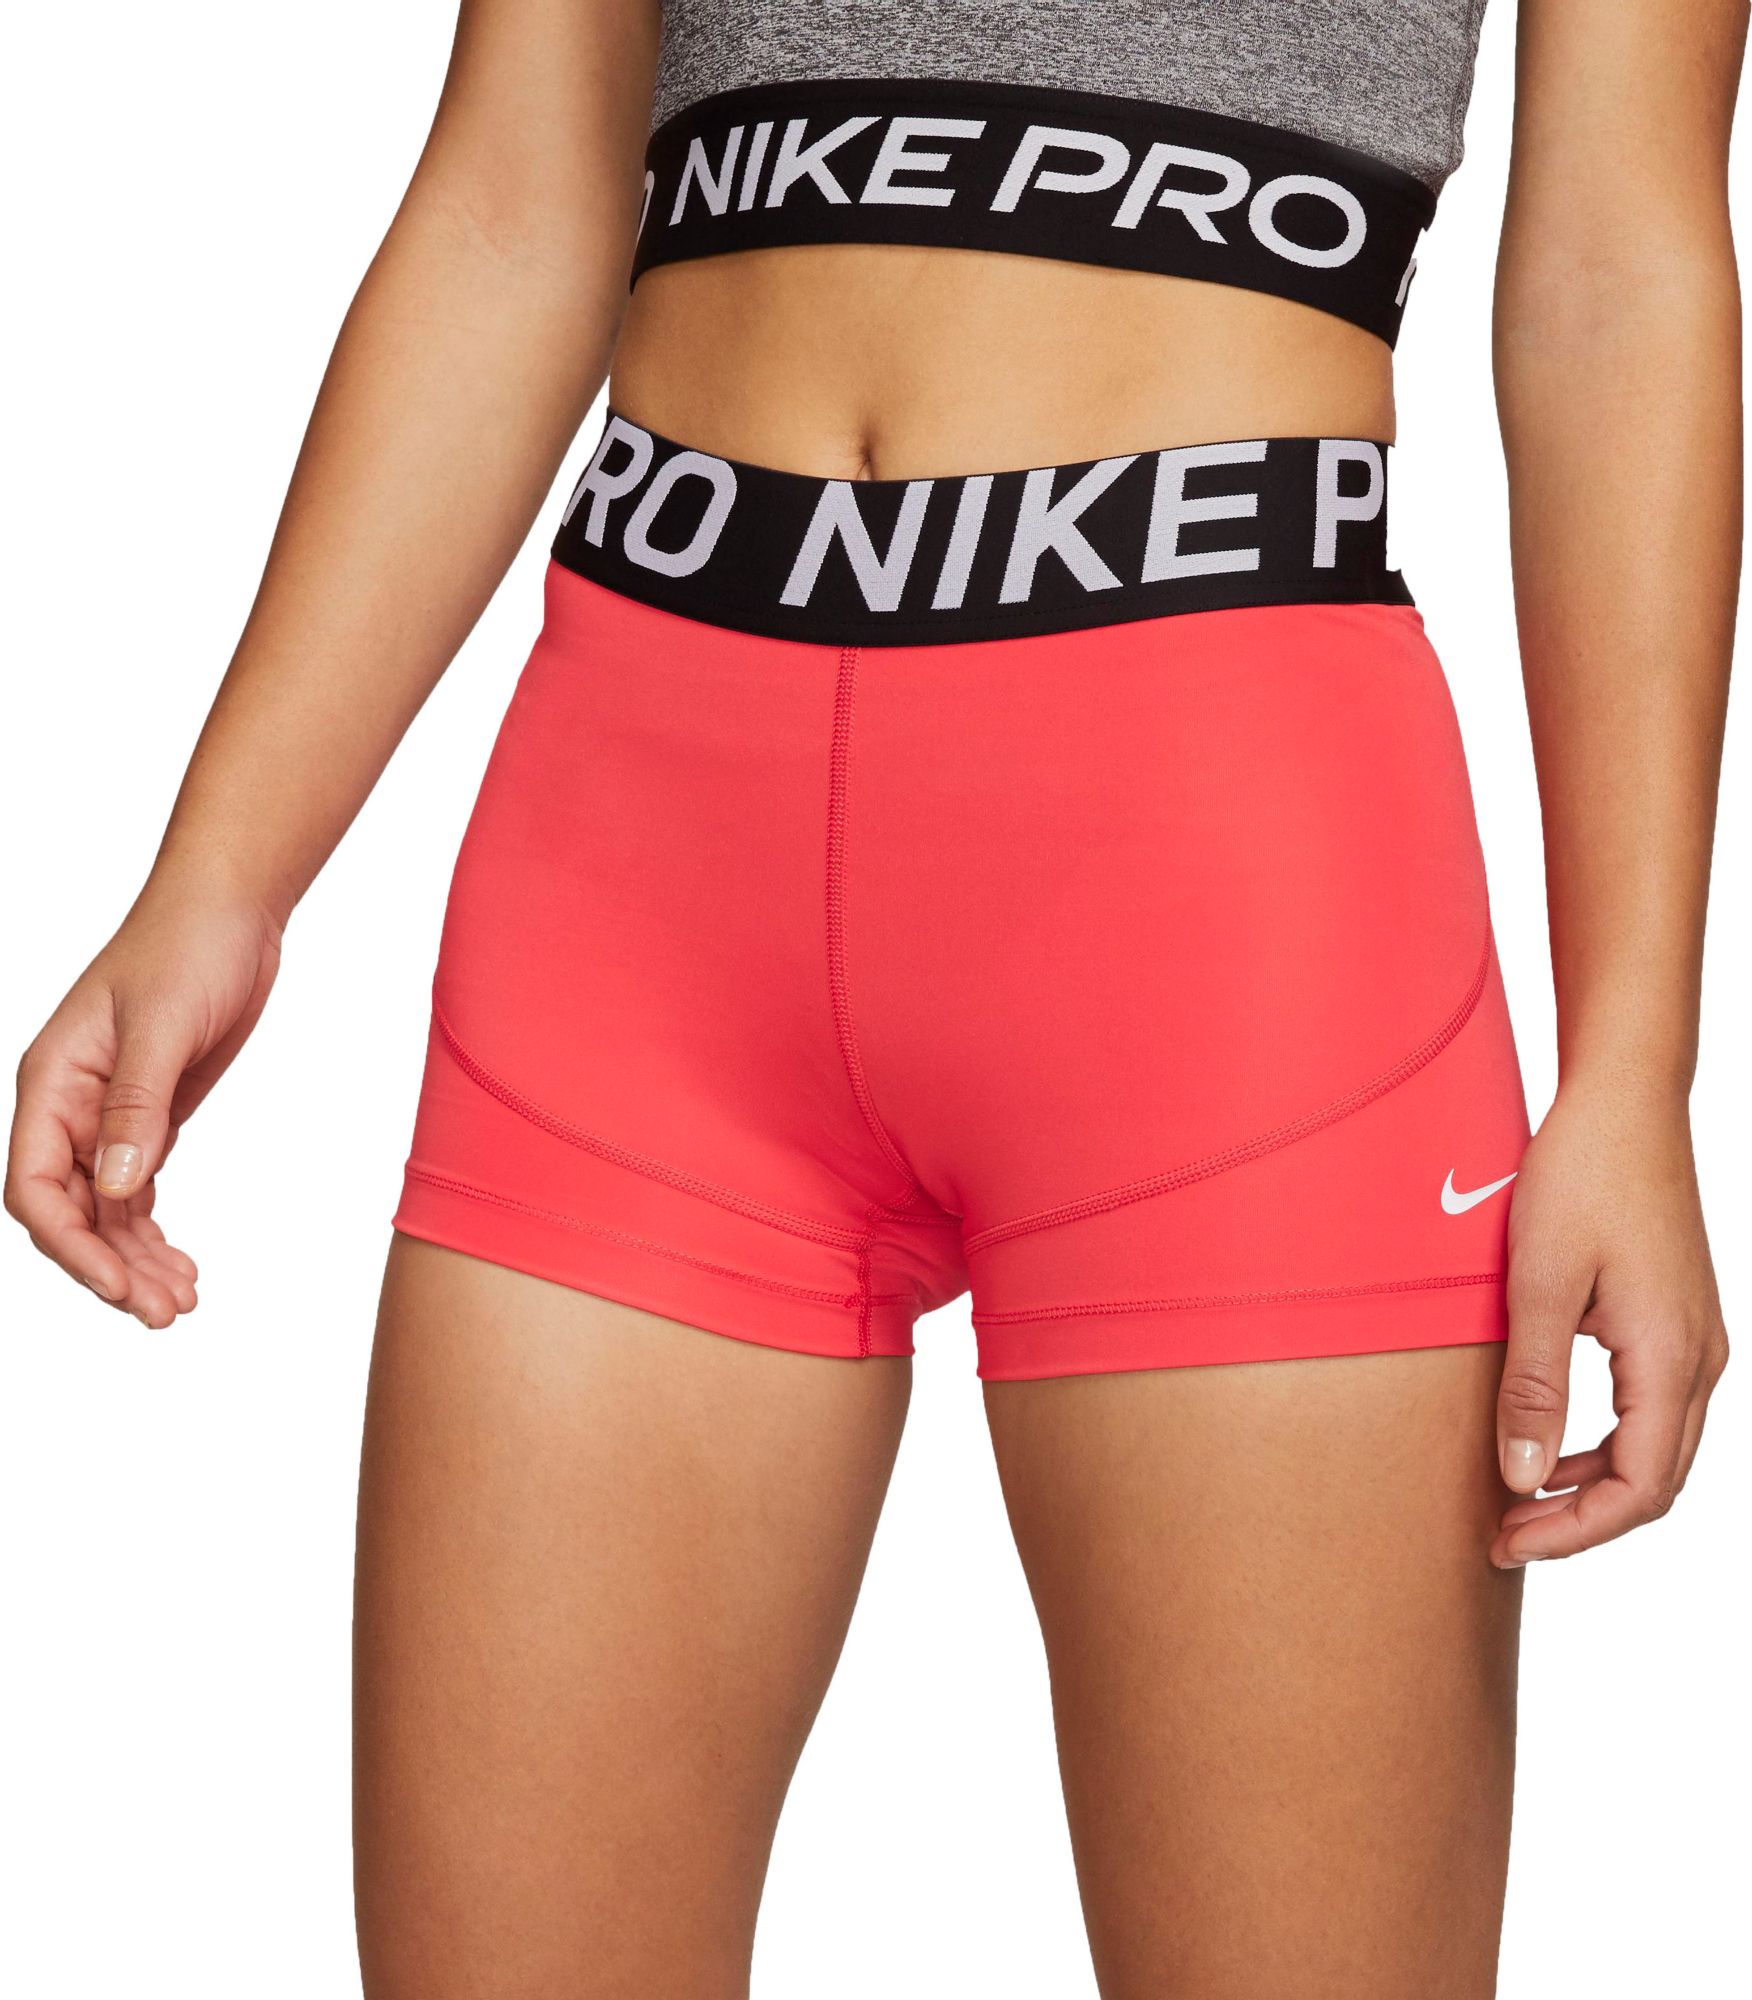 nike pro shorts orange and black